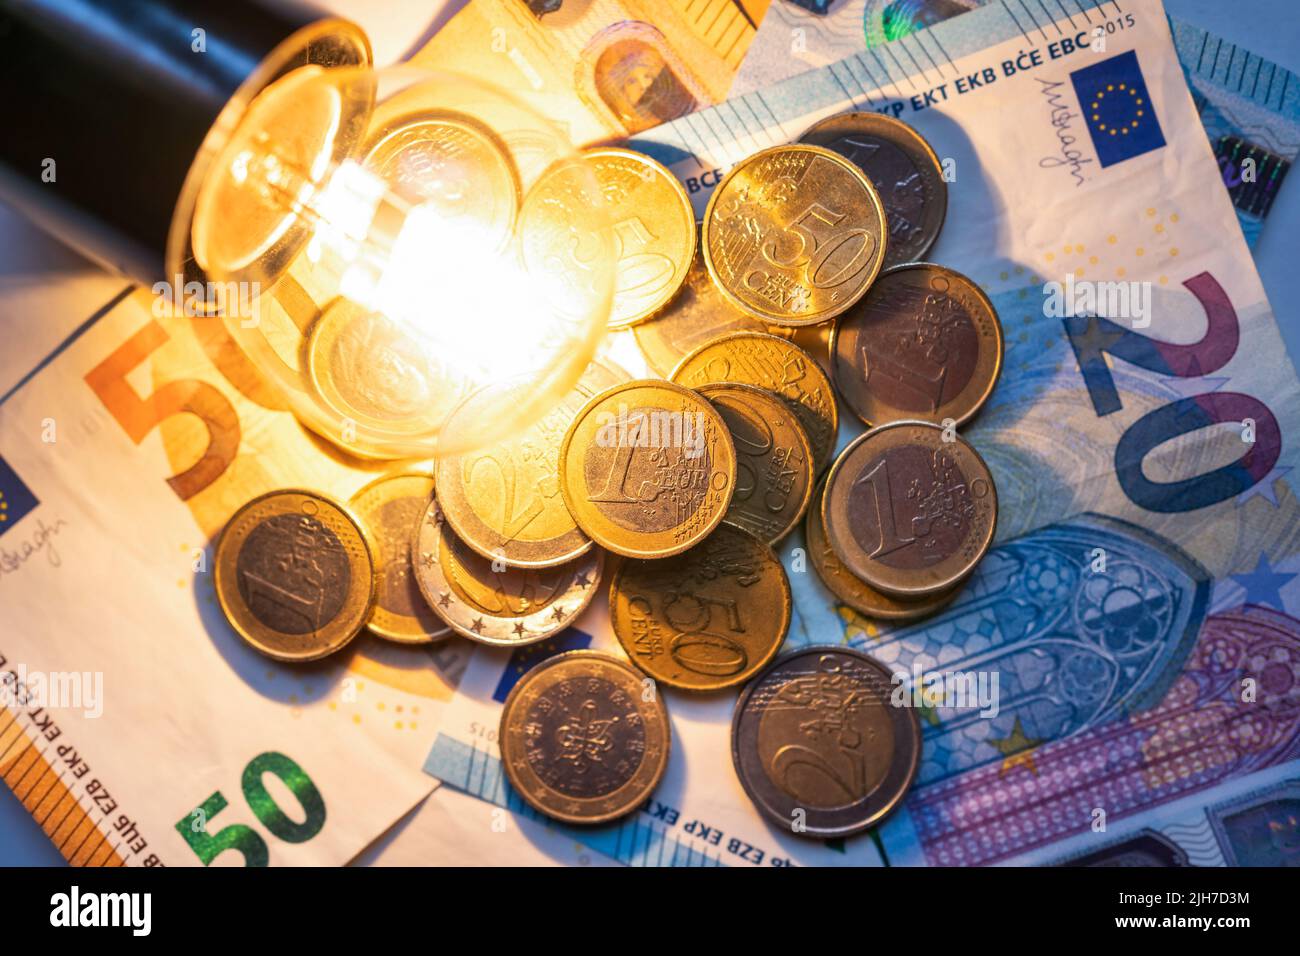 Glühbirne, die auf Münzen und Geldscheinen leuchtet, was die hohen Kosten für Strom darstellt. Stockfoto